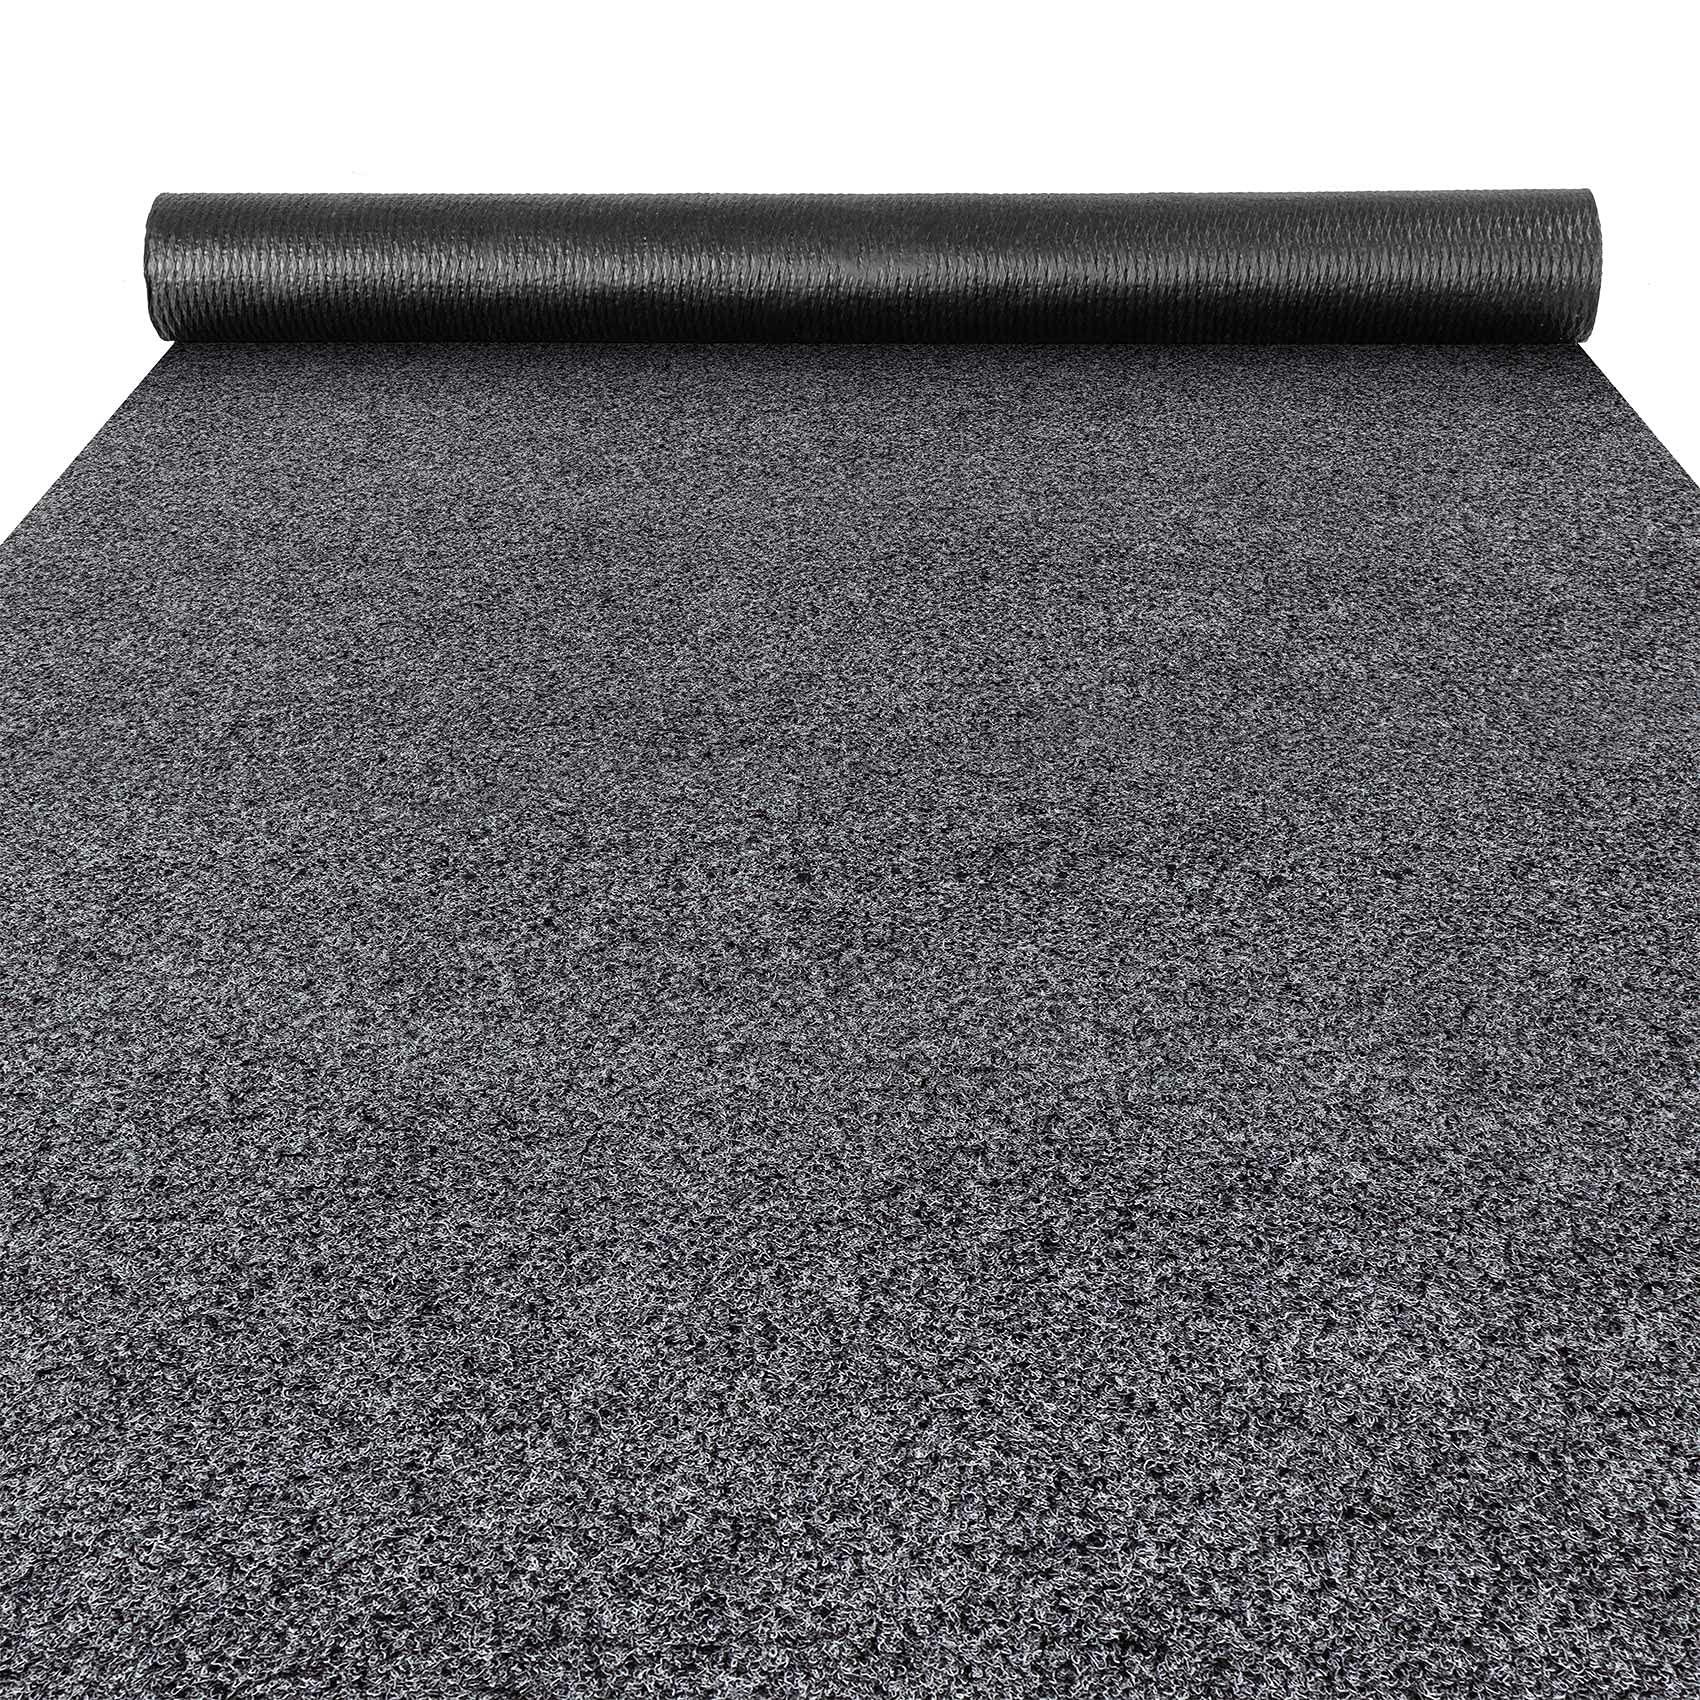 ANRO Fußmatte Schmutzfangmatte Teppich Läufer Sauberlaufmatte Indoor Outdoor Flur Eingang Poet Grau 100x160cm